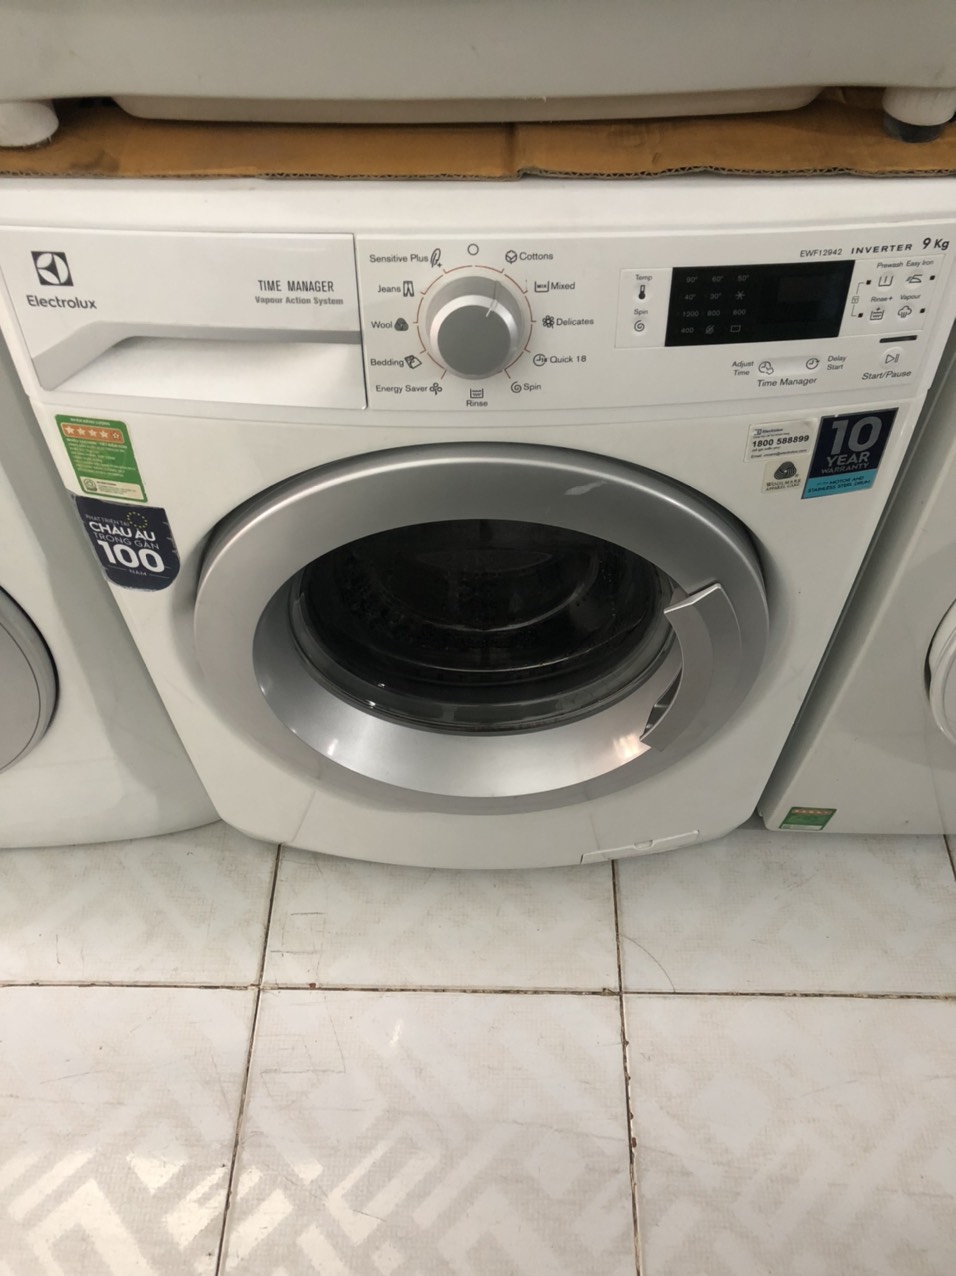 Dịch vụ sửa máy giặt tại nhà Tân Bình của ĐIỆN LẠNH GIA KHANG cung cấp